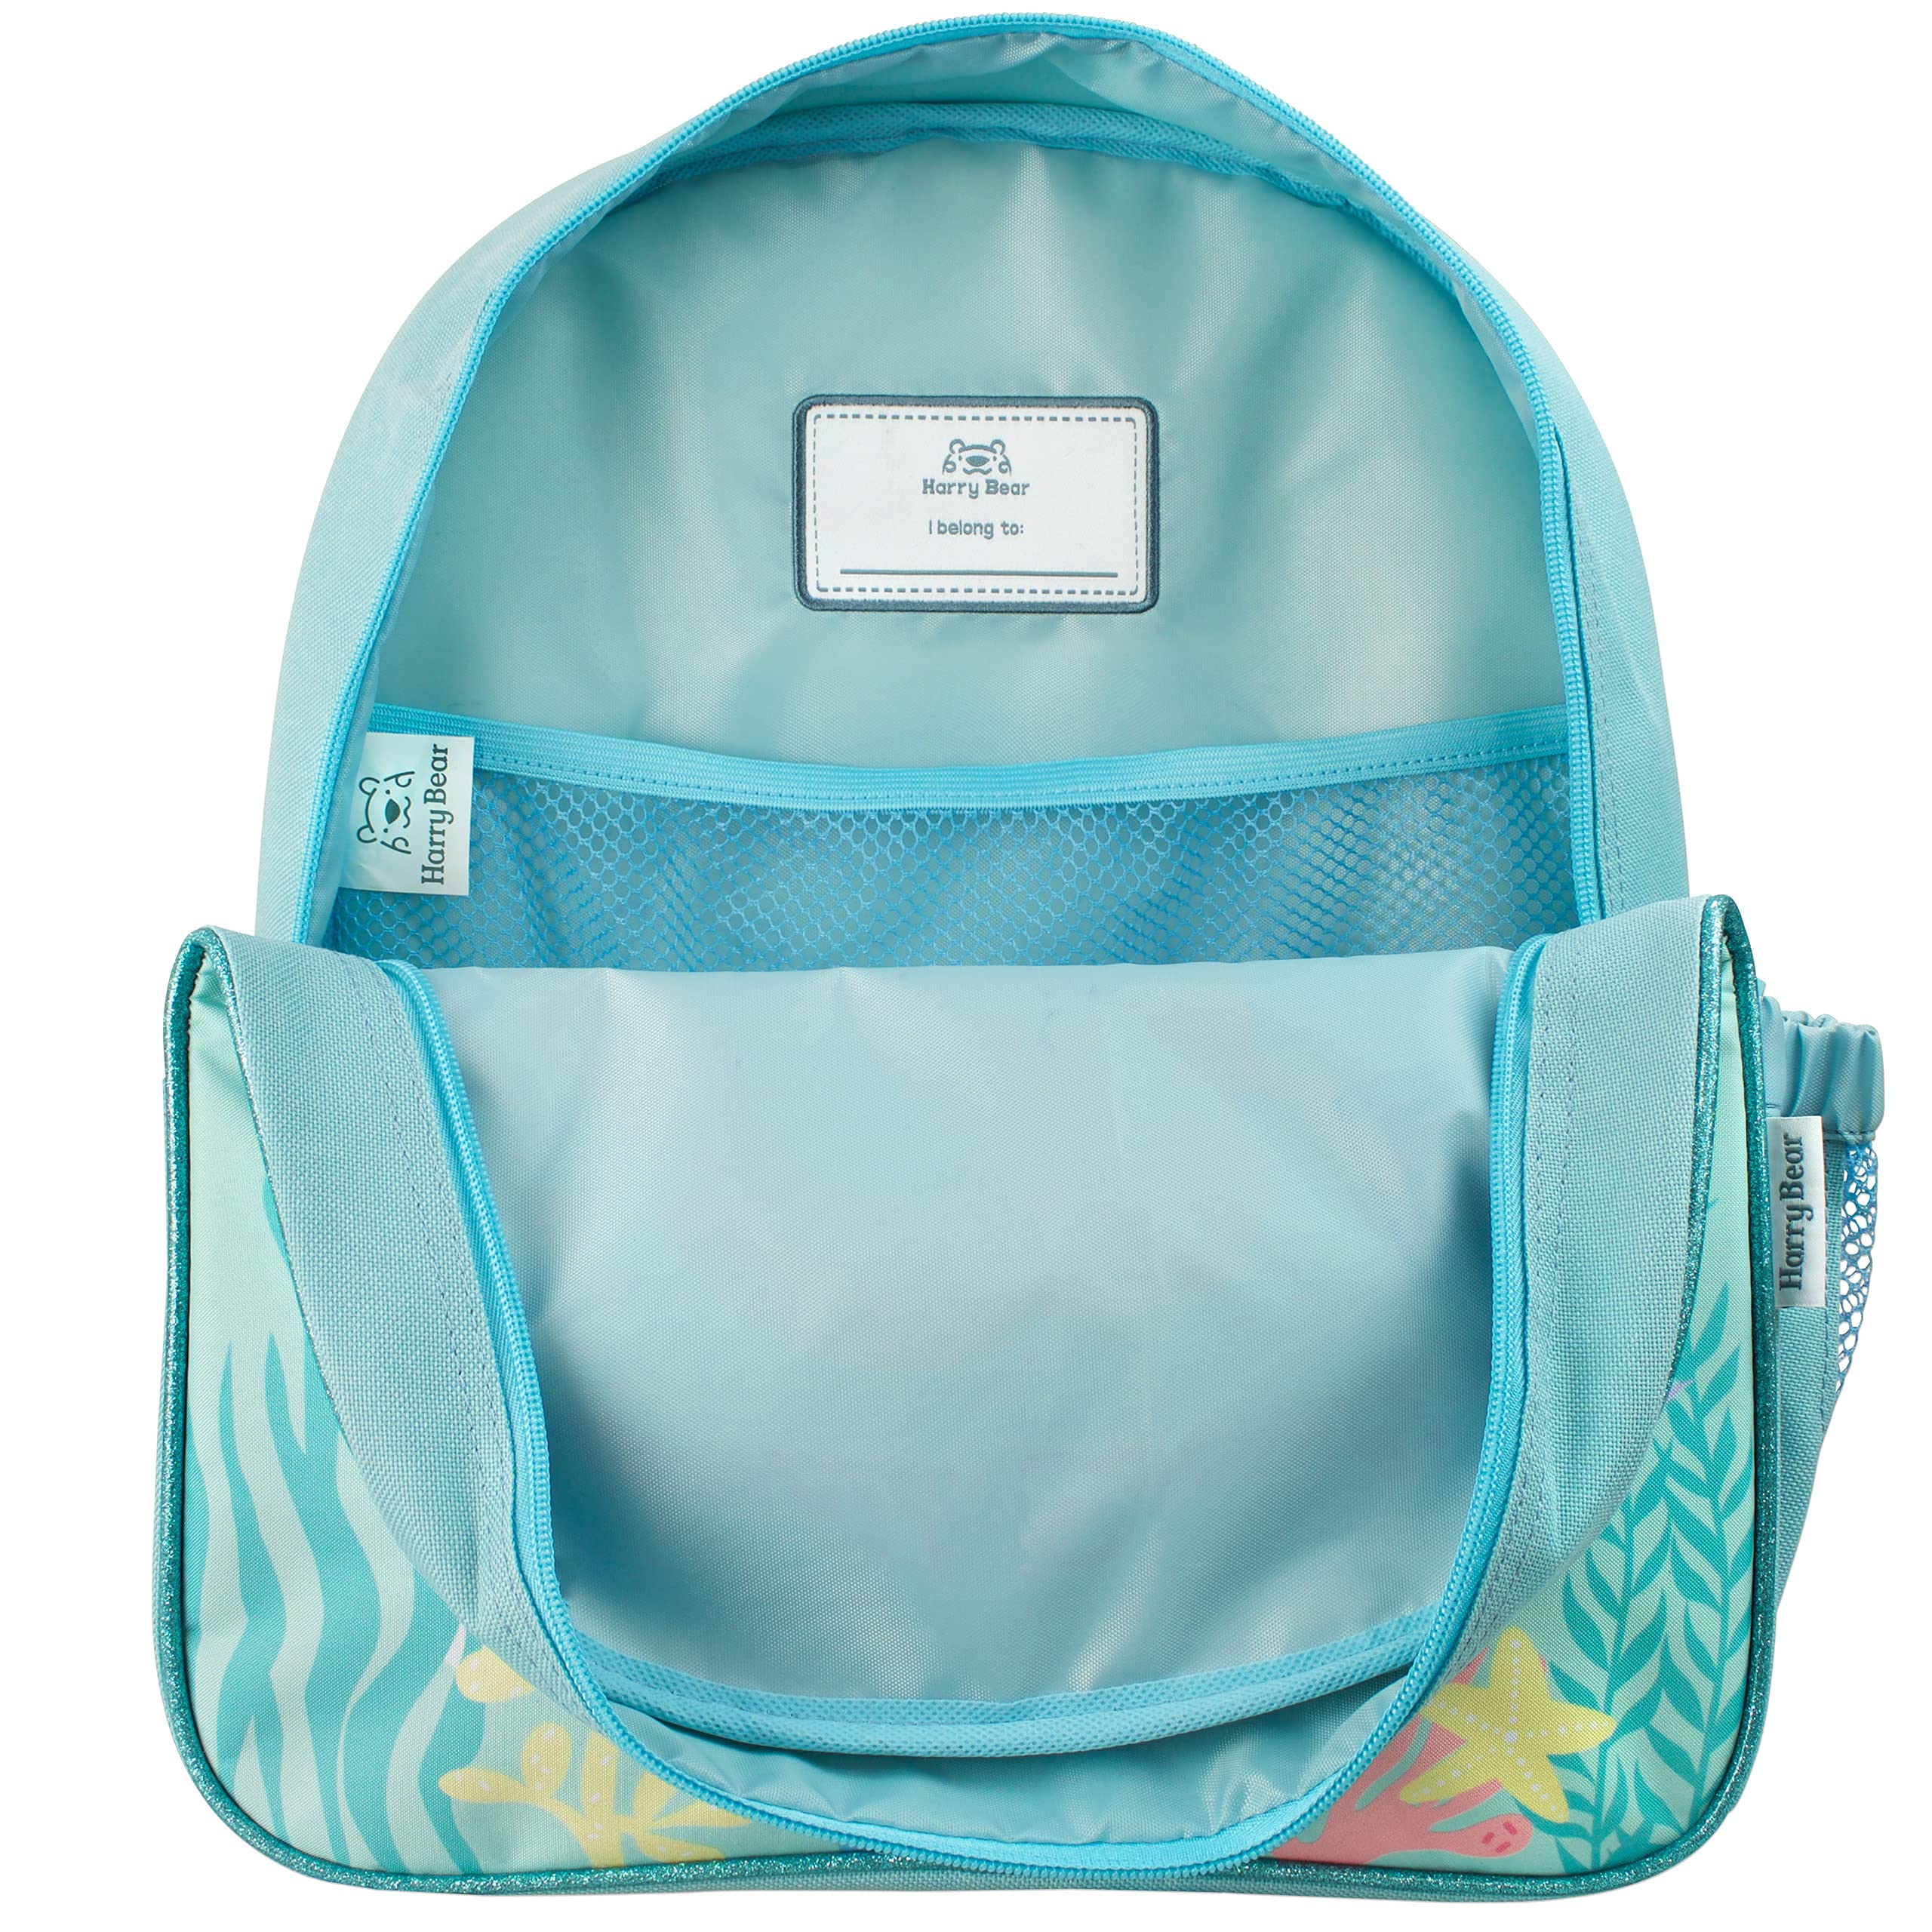 Harry Bear Girls Mermaid Backpack Glitter School Bag for Kids Blue